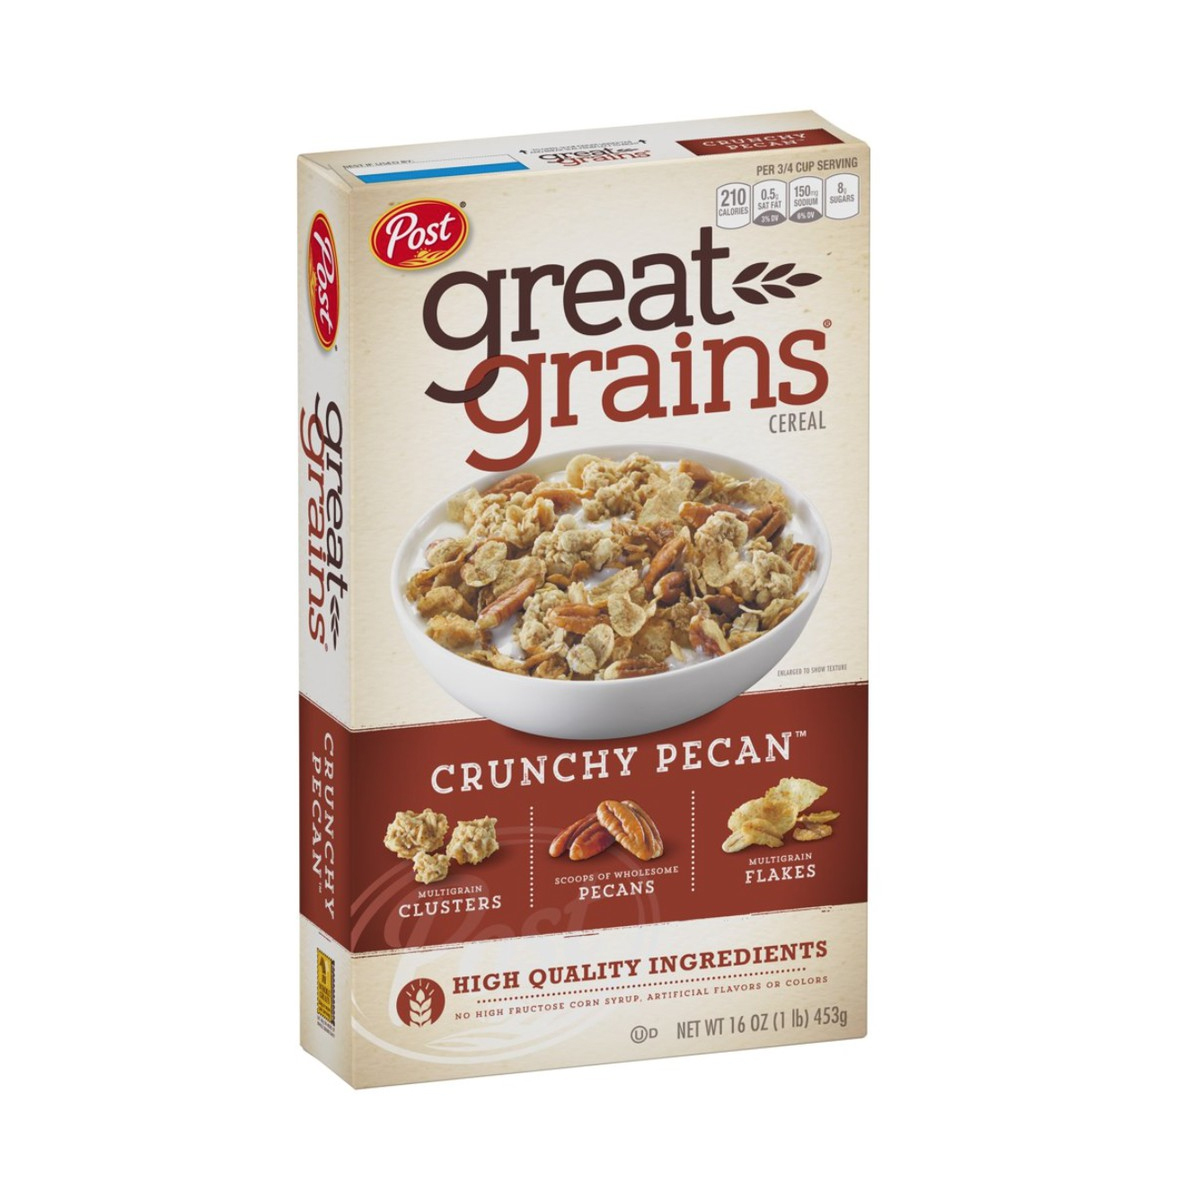 Post Great Grain Crunchy Pecan 16oz